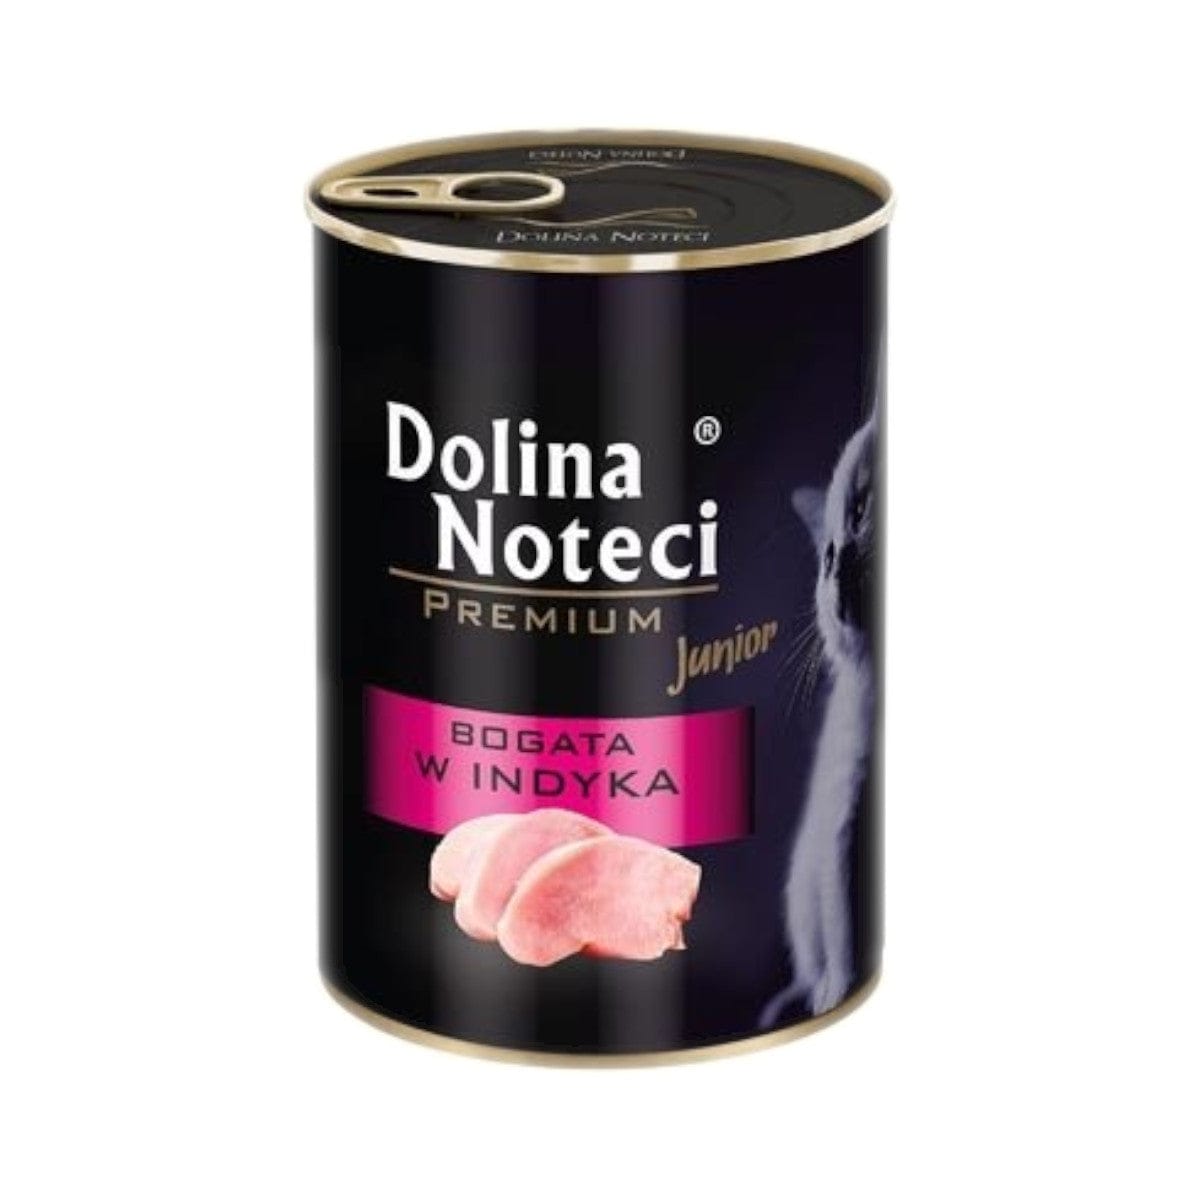 Produkt DOLINA NOTECI Mokra karma dla kota Karma mokra dla kota DOLINA NOTECI Premium Junior indyk 400 g S01760